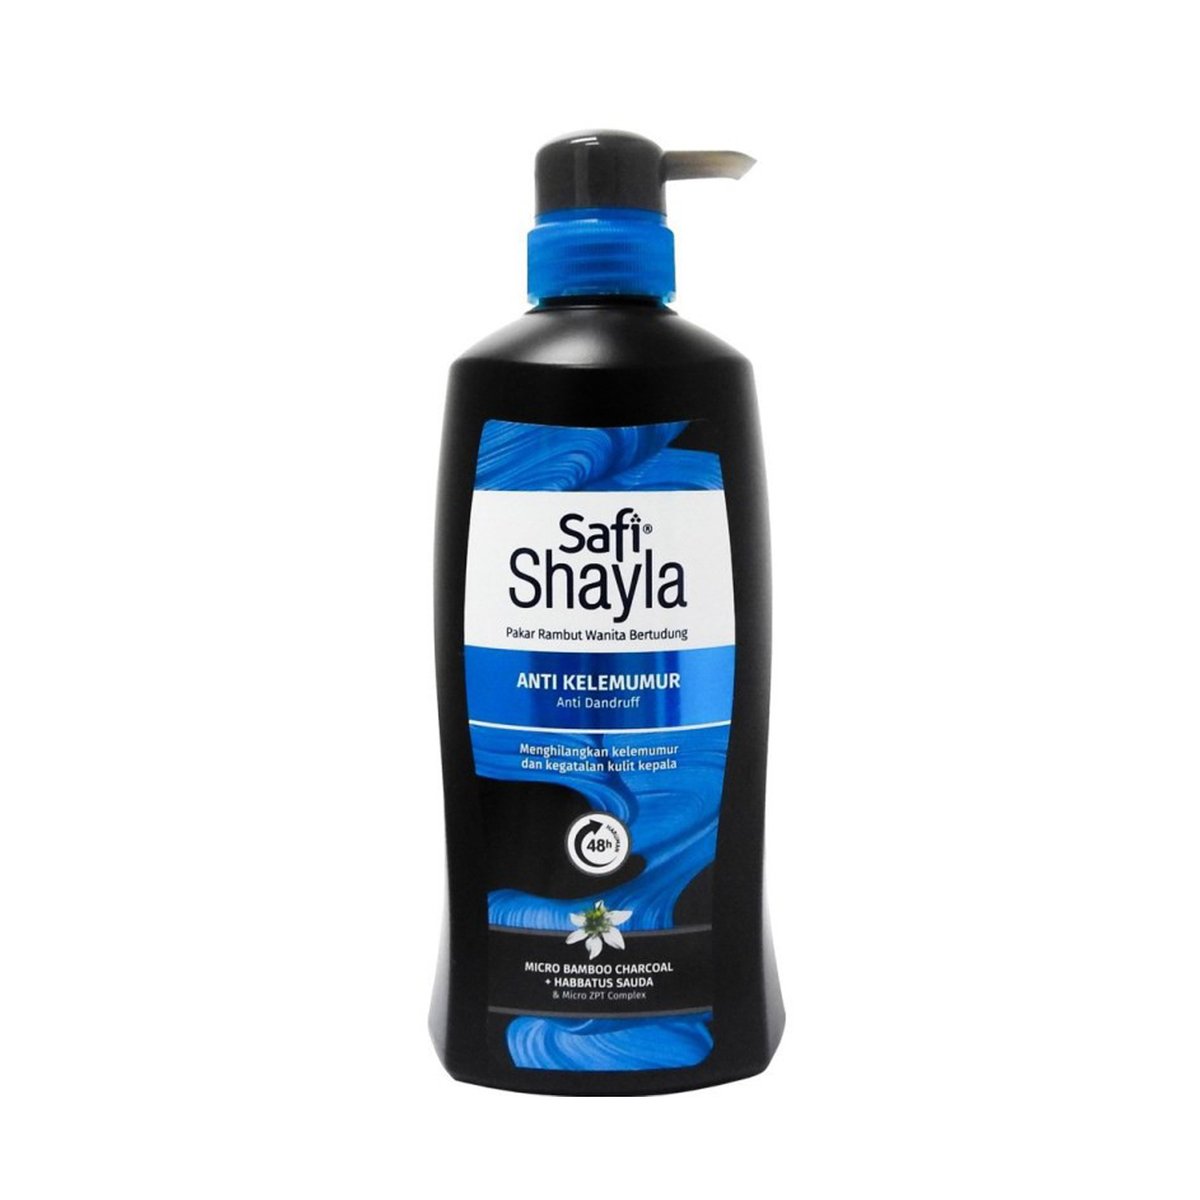 Safi Shyla Shampoo Anti Dandruff 520g